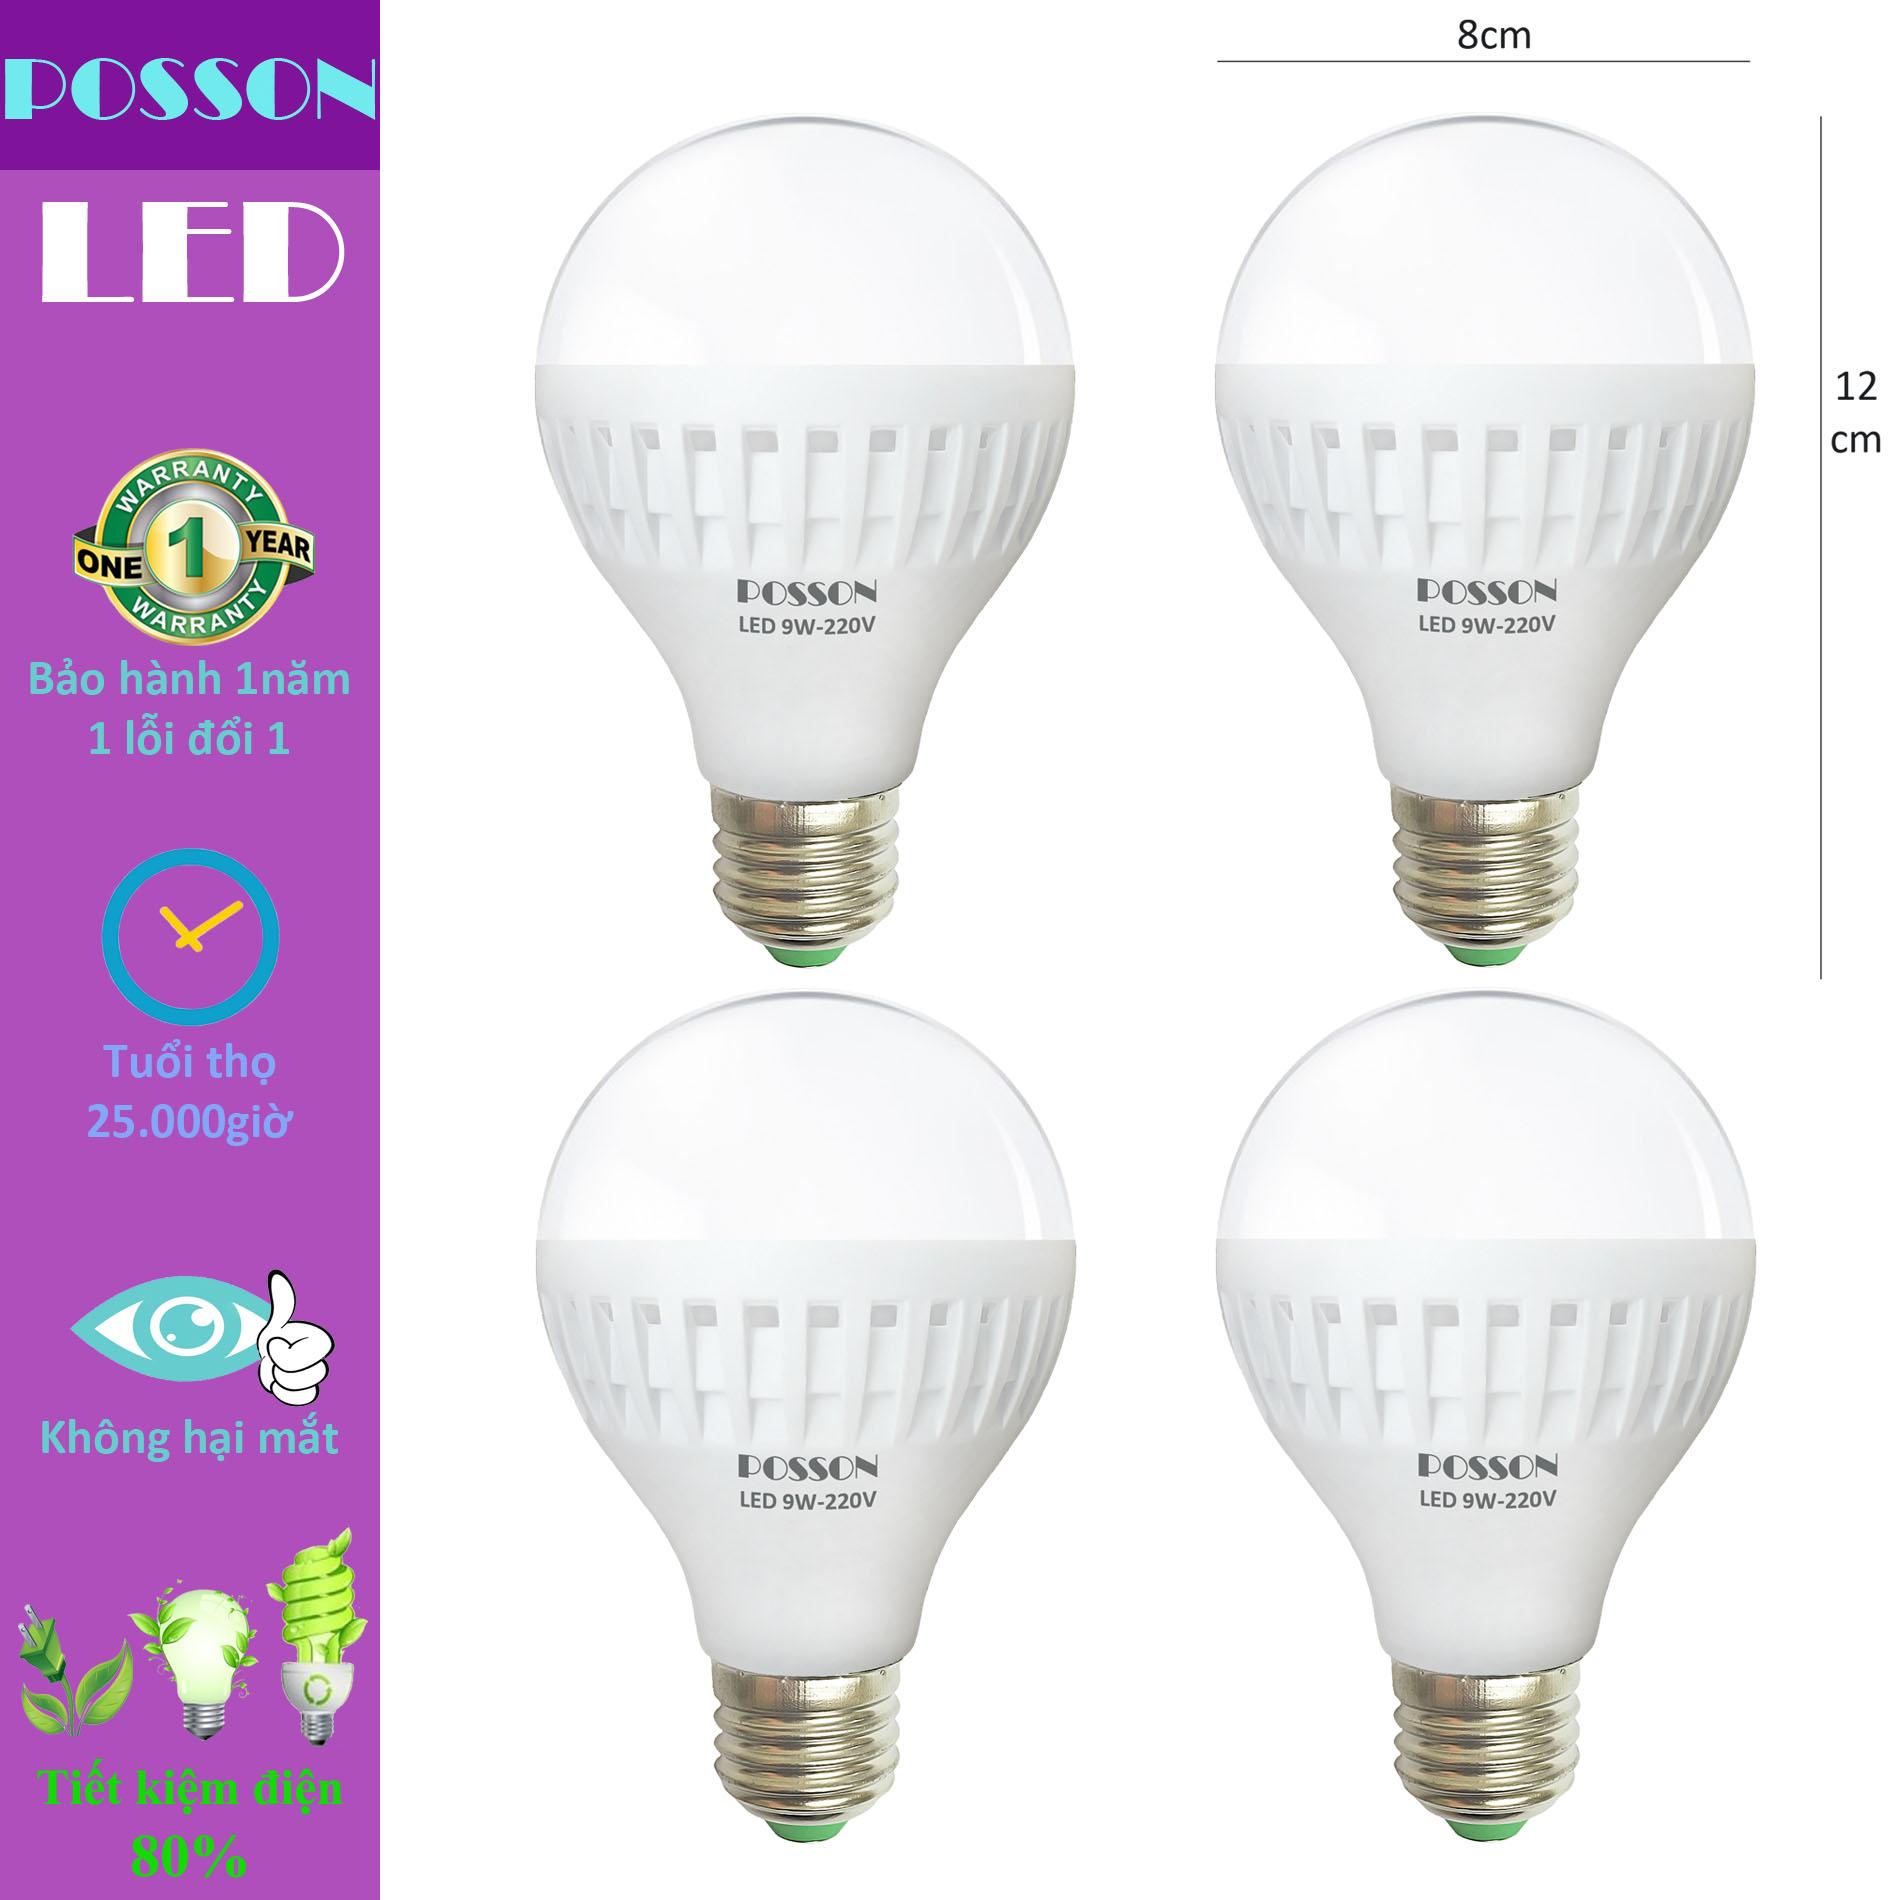 4 Bóng đèn Led 9w tiết kiệm điện sáng trắng Posson LB-N9